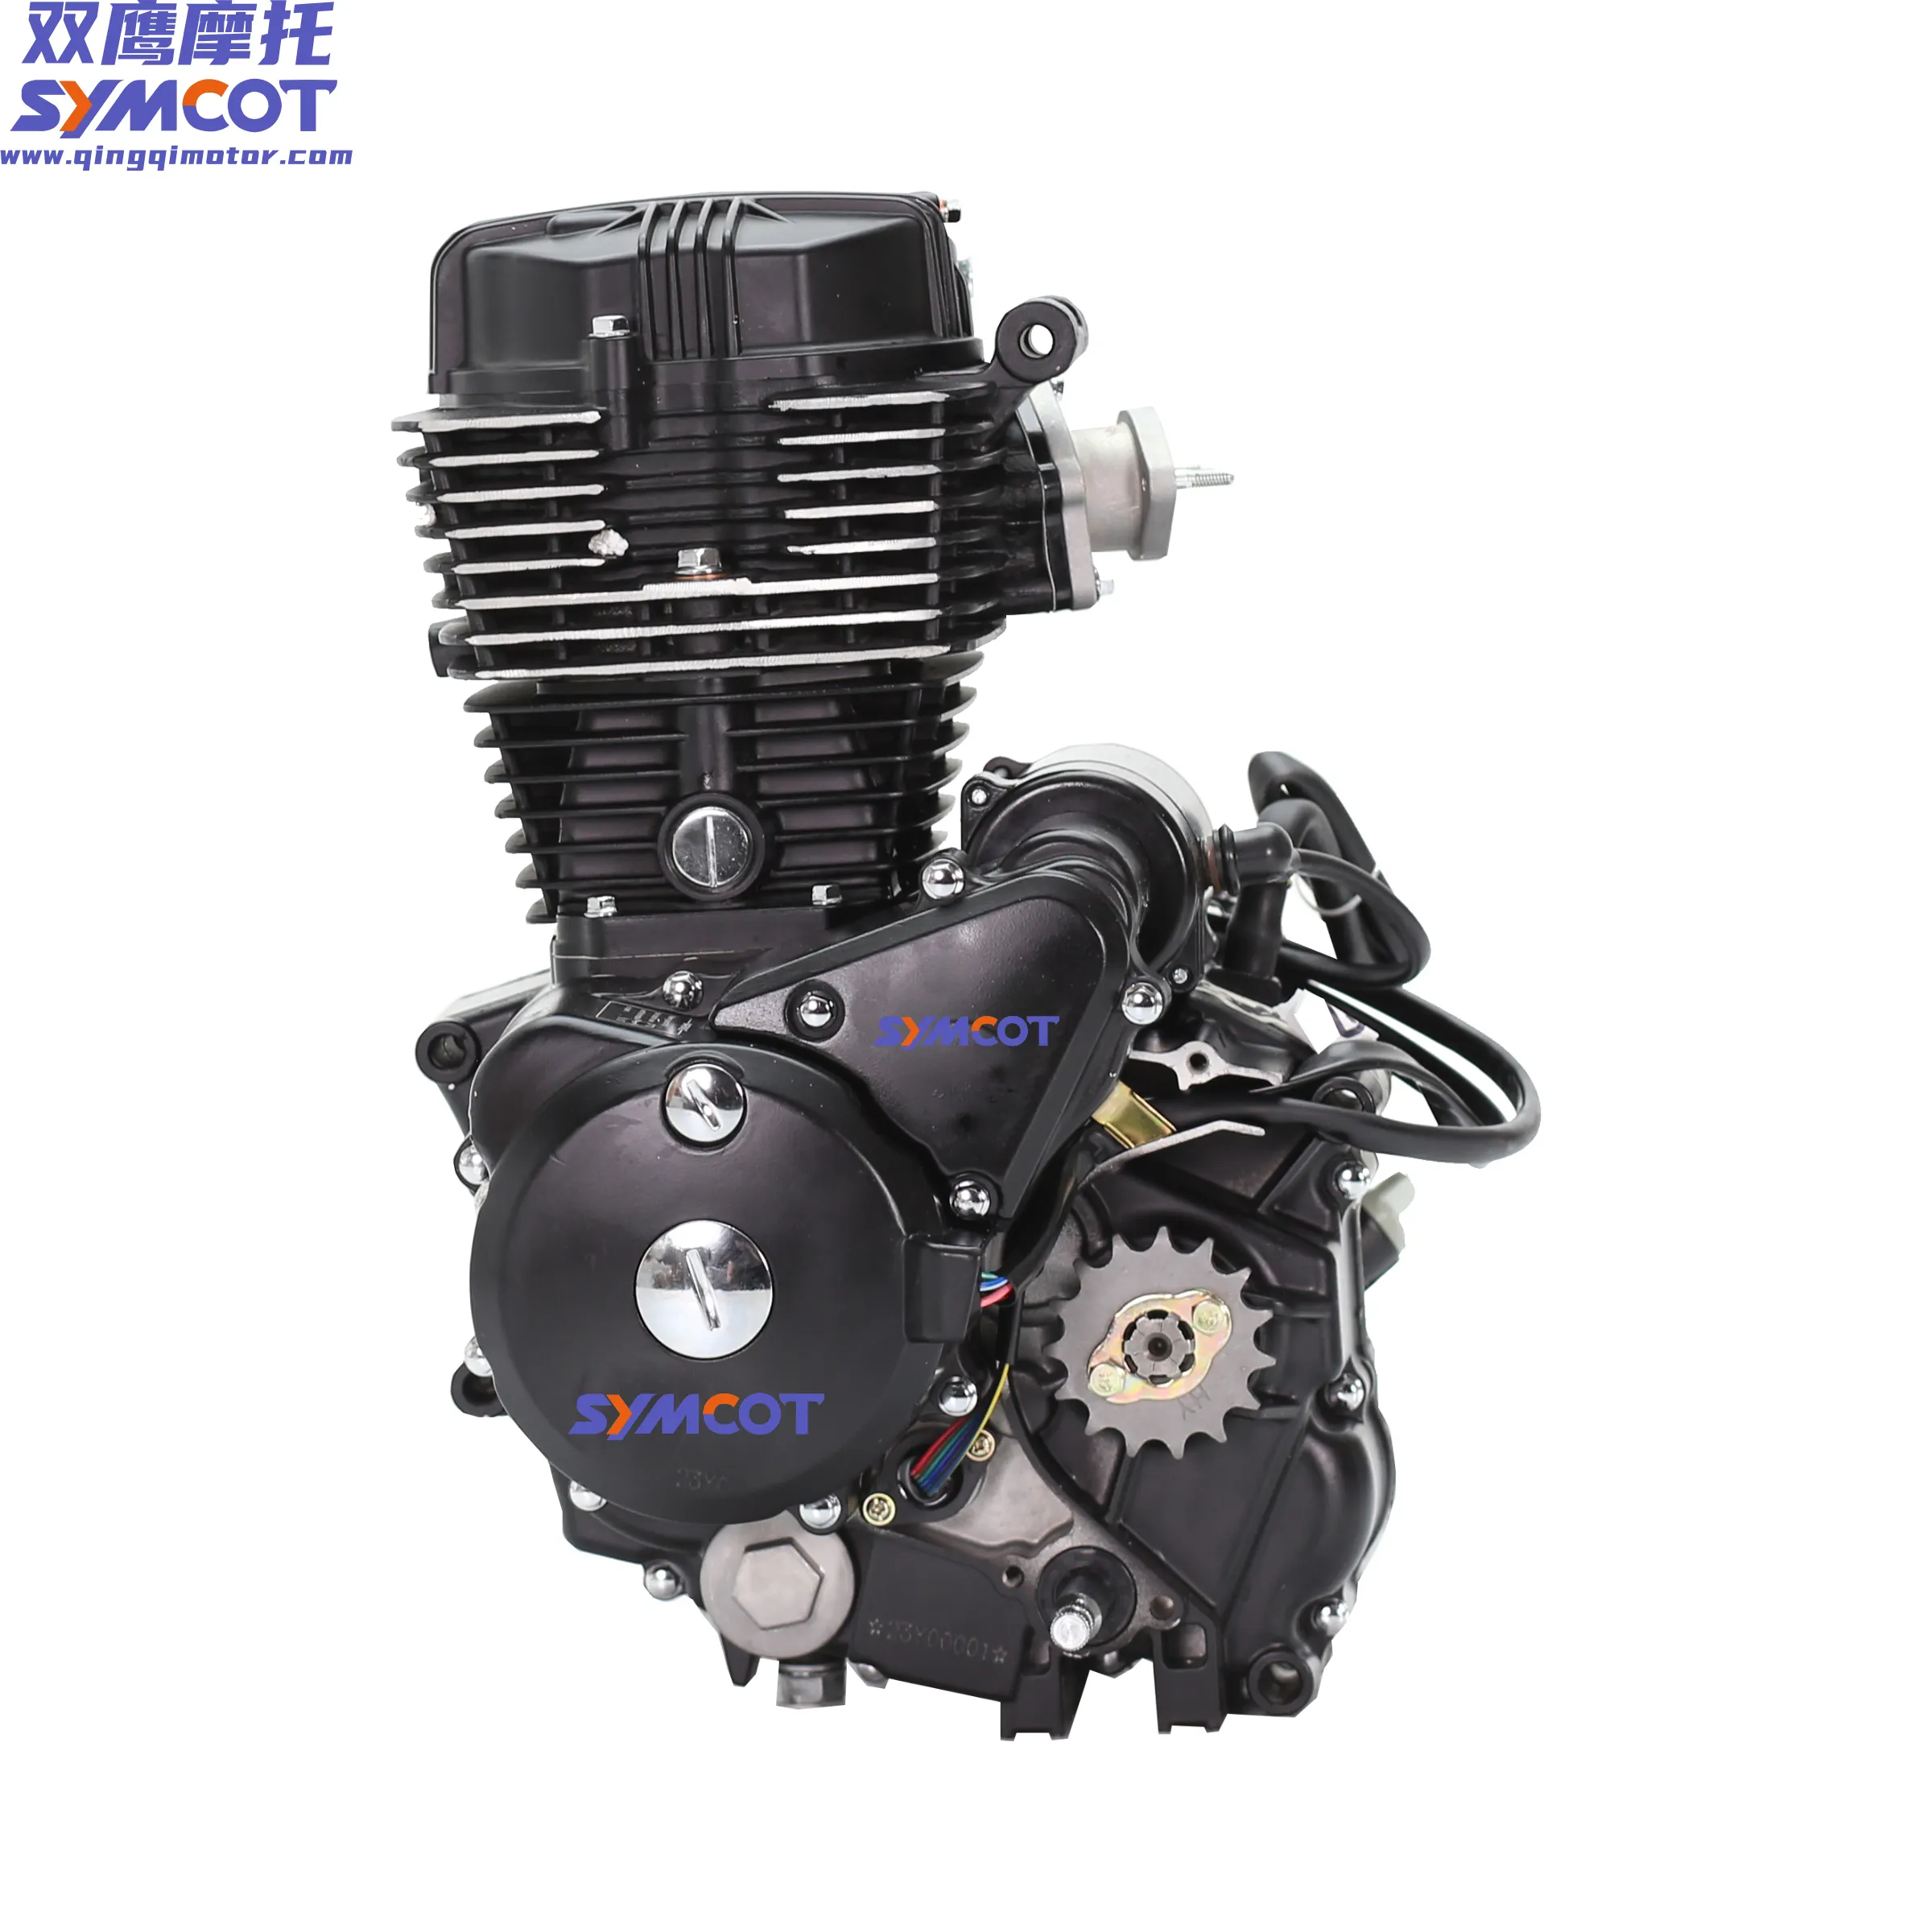 SYMCOT Motrcycles CG moteur 125cc 150cc 200cc 250cc refroidi par air 4 temps électrique/kickstart adapté pour CG GN